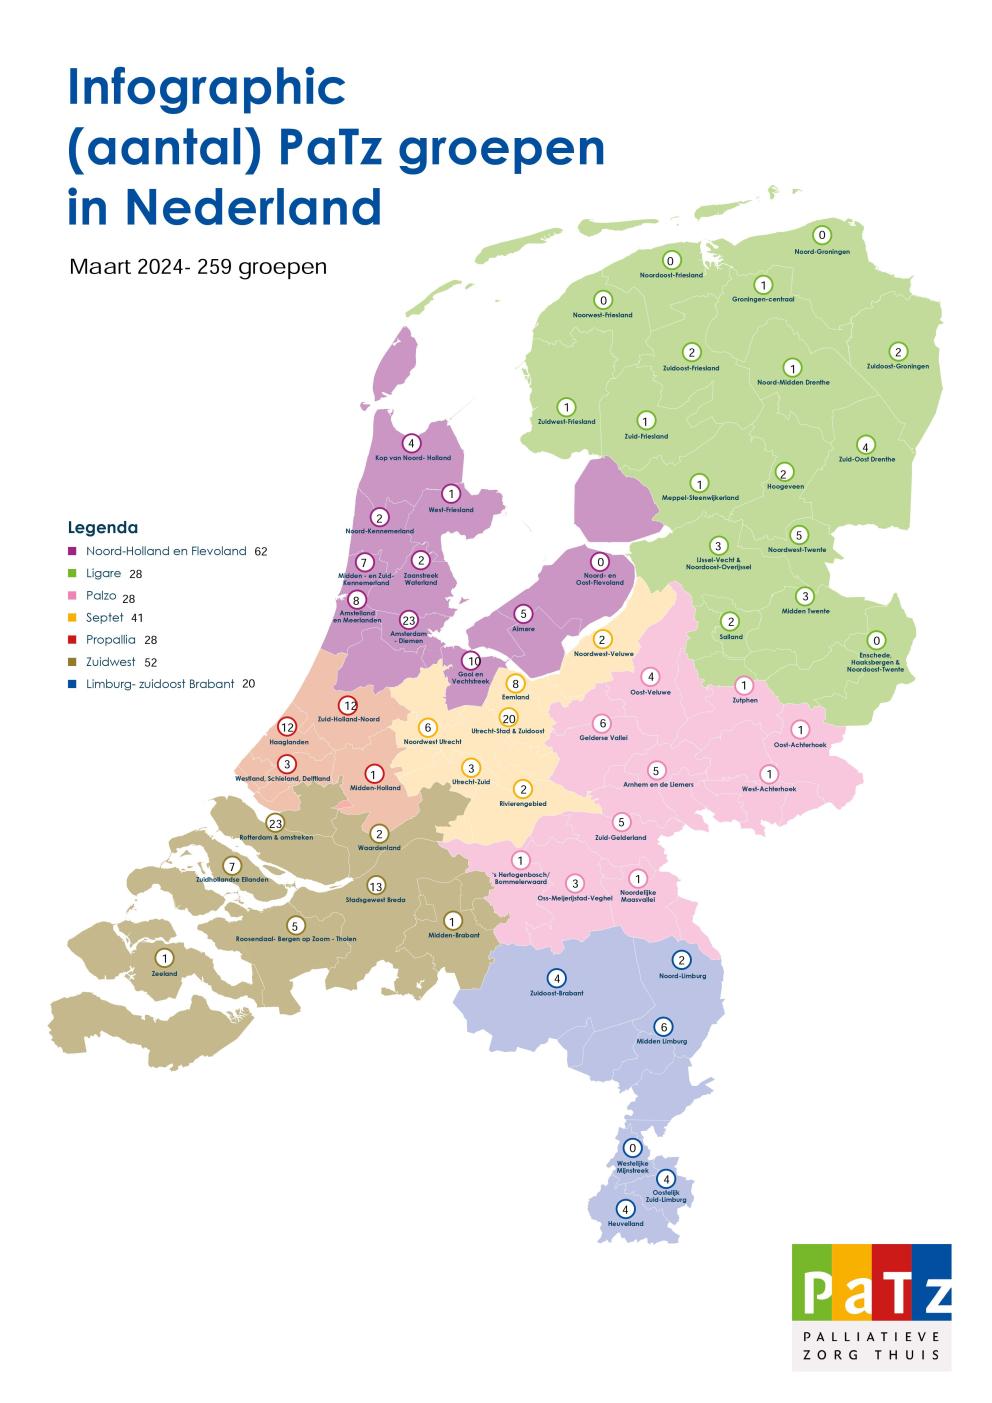 Infographic van PaTz-groepen in Nederland, inclusief namen van netwerken